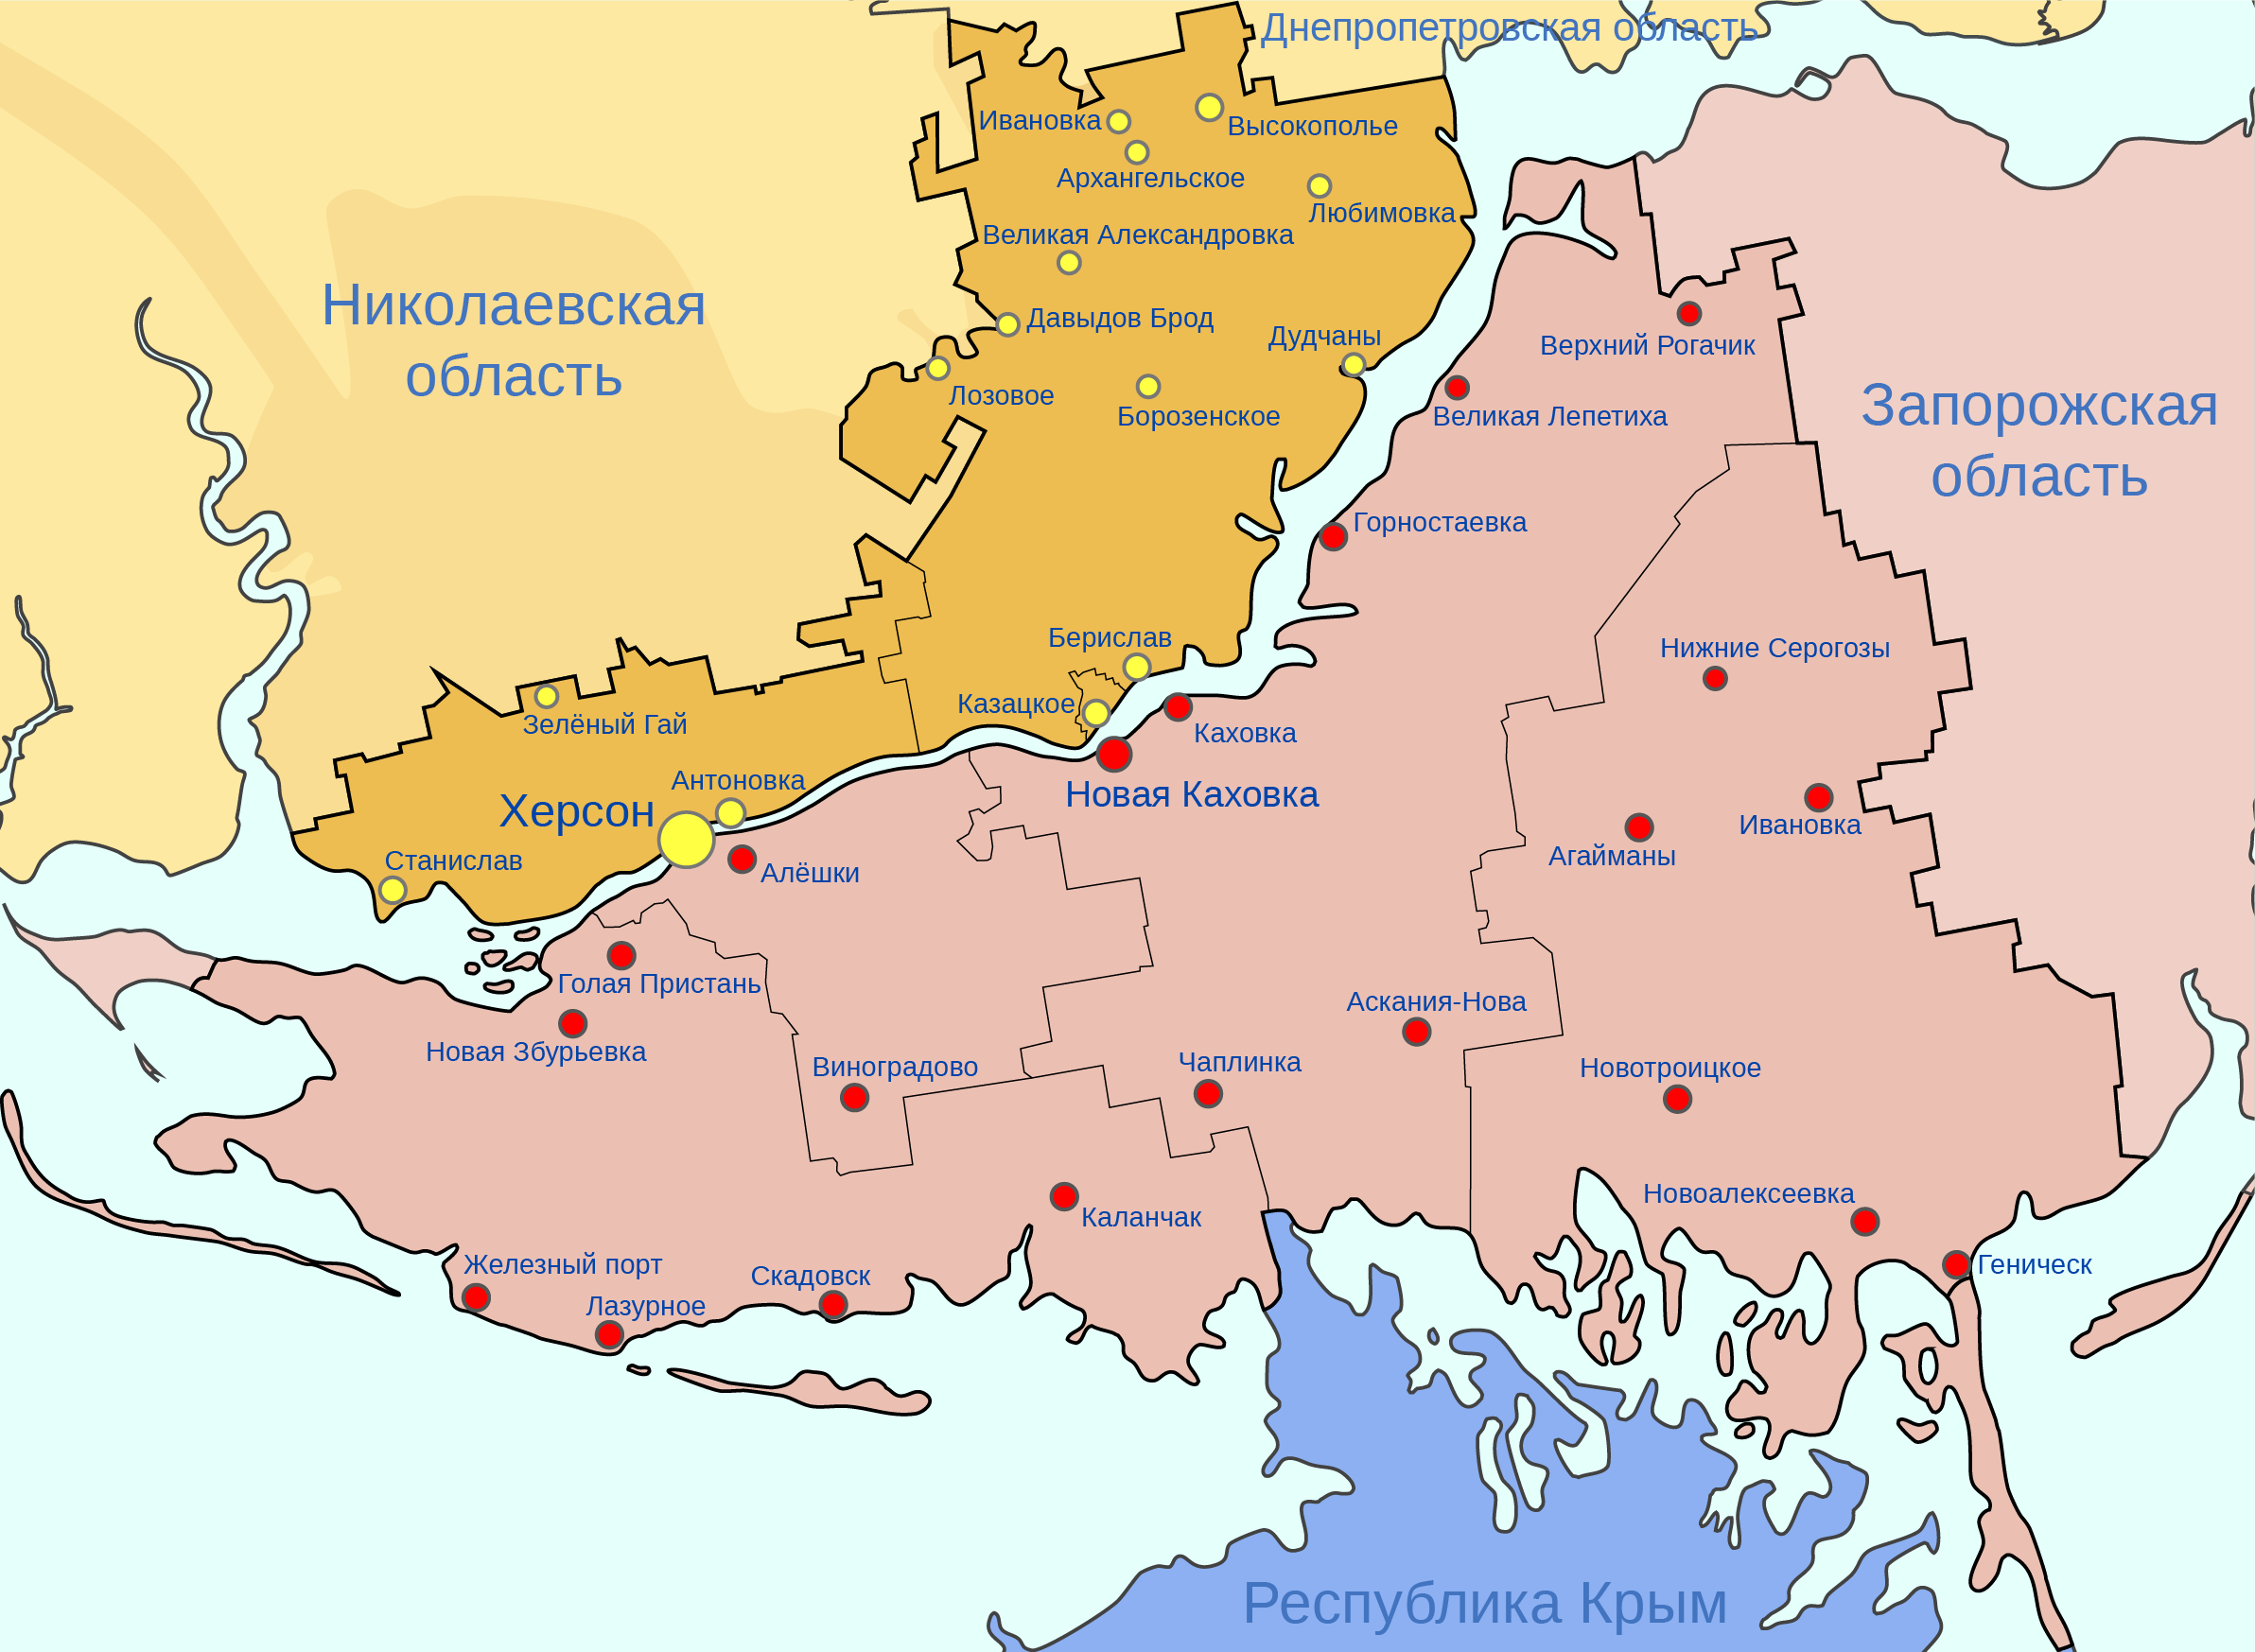 Карта Херсонской обл. Херсонская область на карте. Херсонская область на карте Украины. Административная карта Херсонской области. Карта где херсонская область